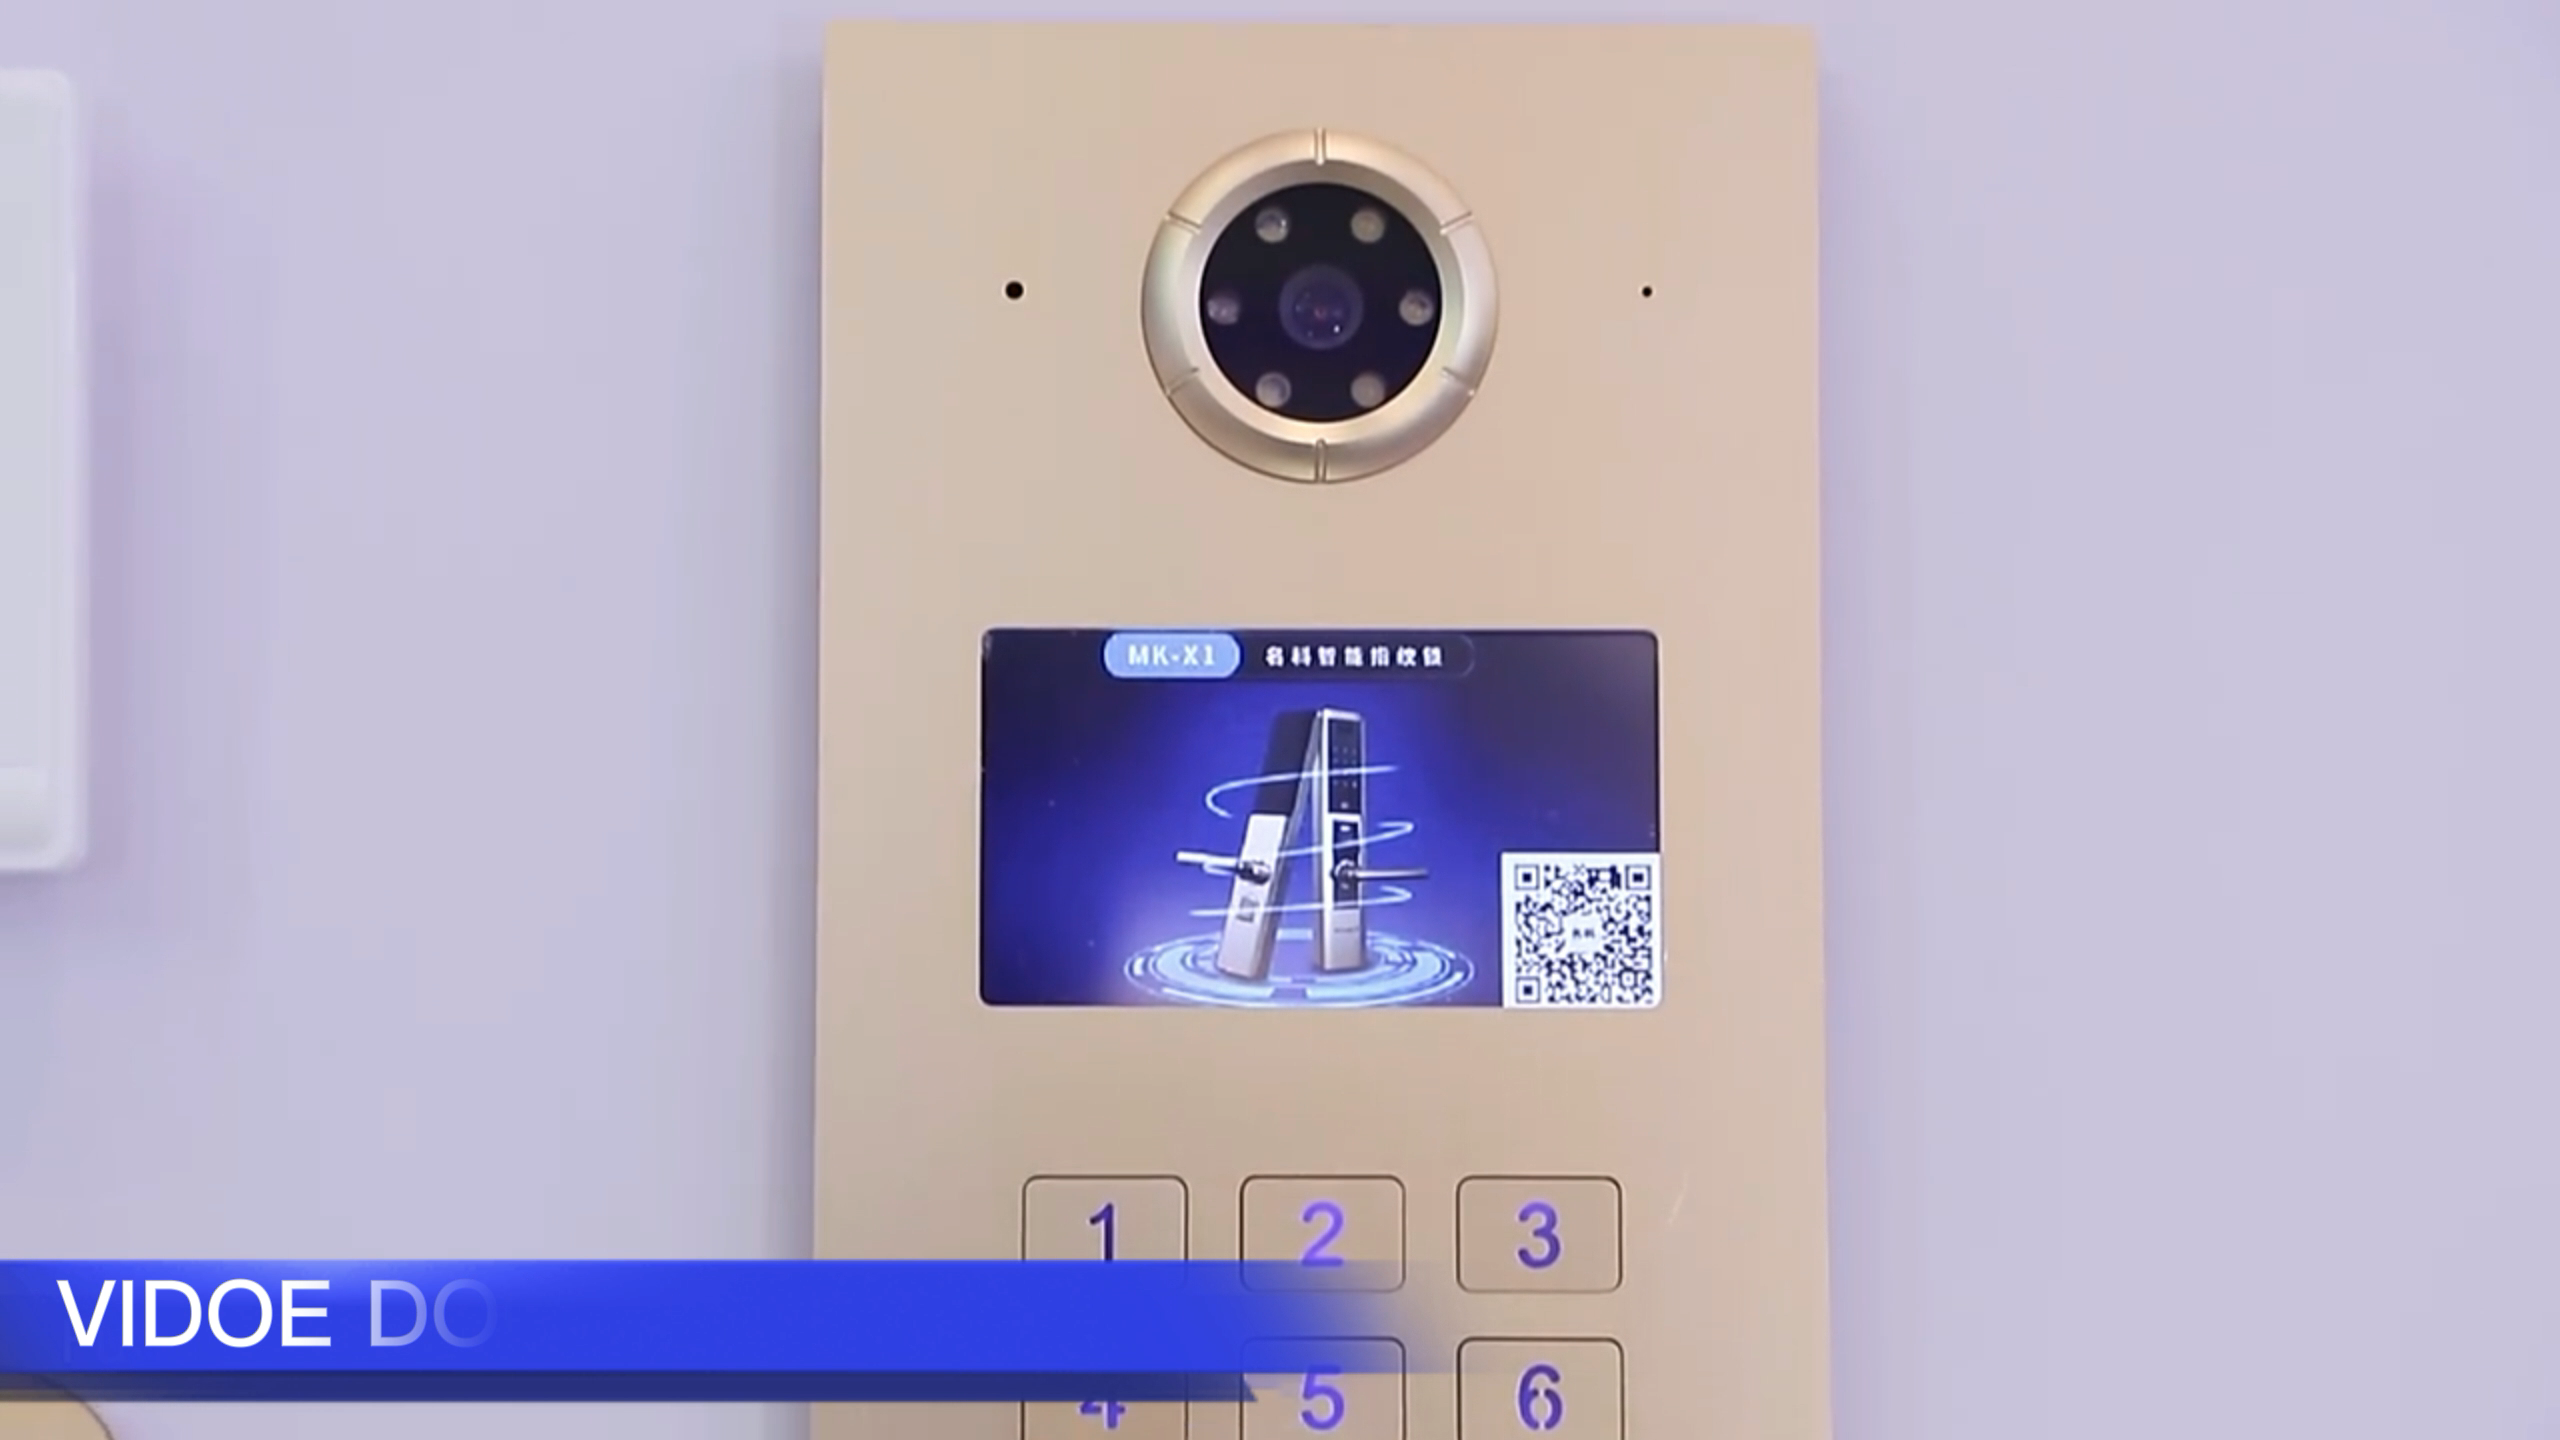 IP-Video-Intercom-System für Mehrfach-Apartments-Apartments Türklingel Hochauflösende Bildschirm Visuelle Türklingel1